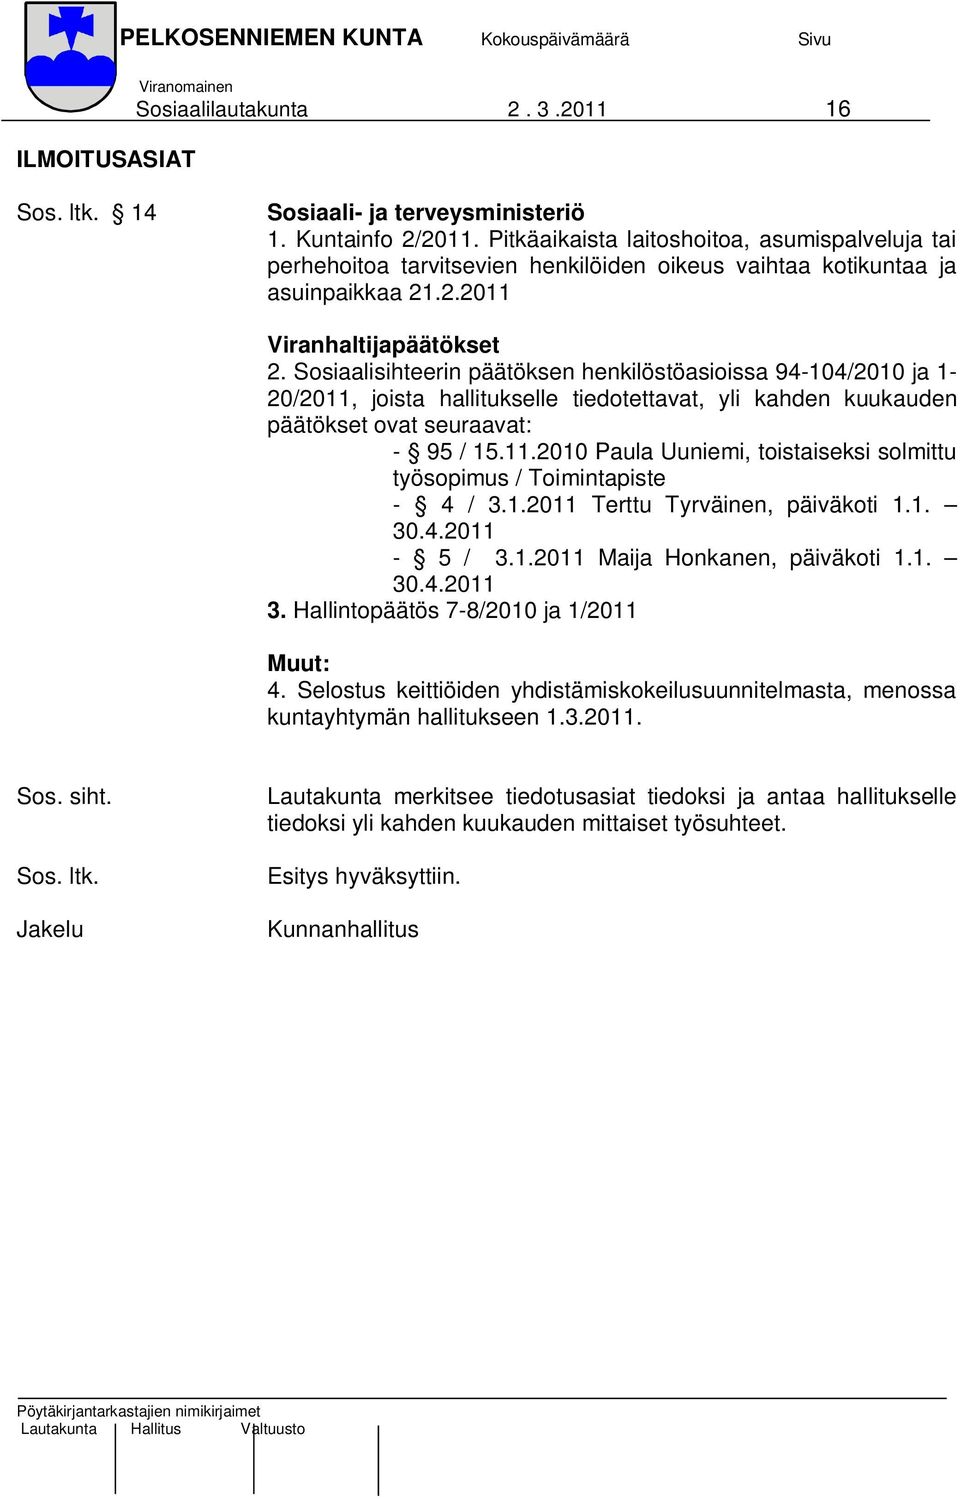 Sosiaalisihteerin päätöksen henkilöstöasioissa 94-104/2010 ja 1-20/2011, joista hallitukselle tiedotettavat, yli kahden kuukauden päätökset ovat seuraavat: - 95 / 15.11.2010 Paula Uuniemi, toistaiseksi solmittu työsopimus / Toimintapiste - 4 / 3.